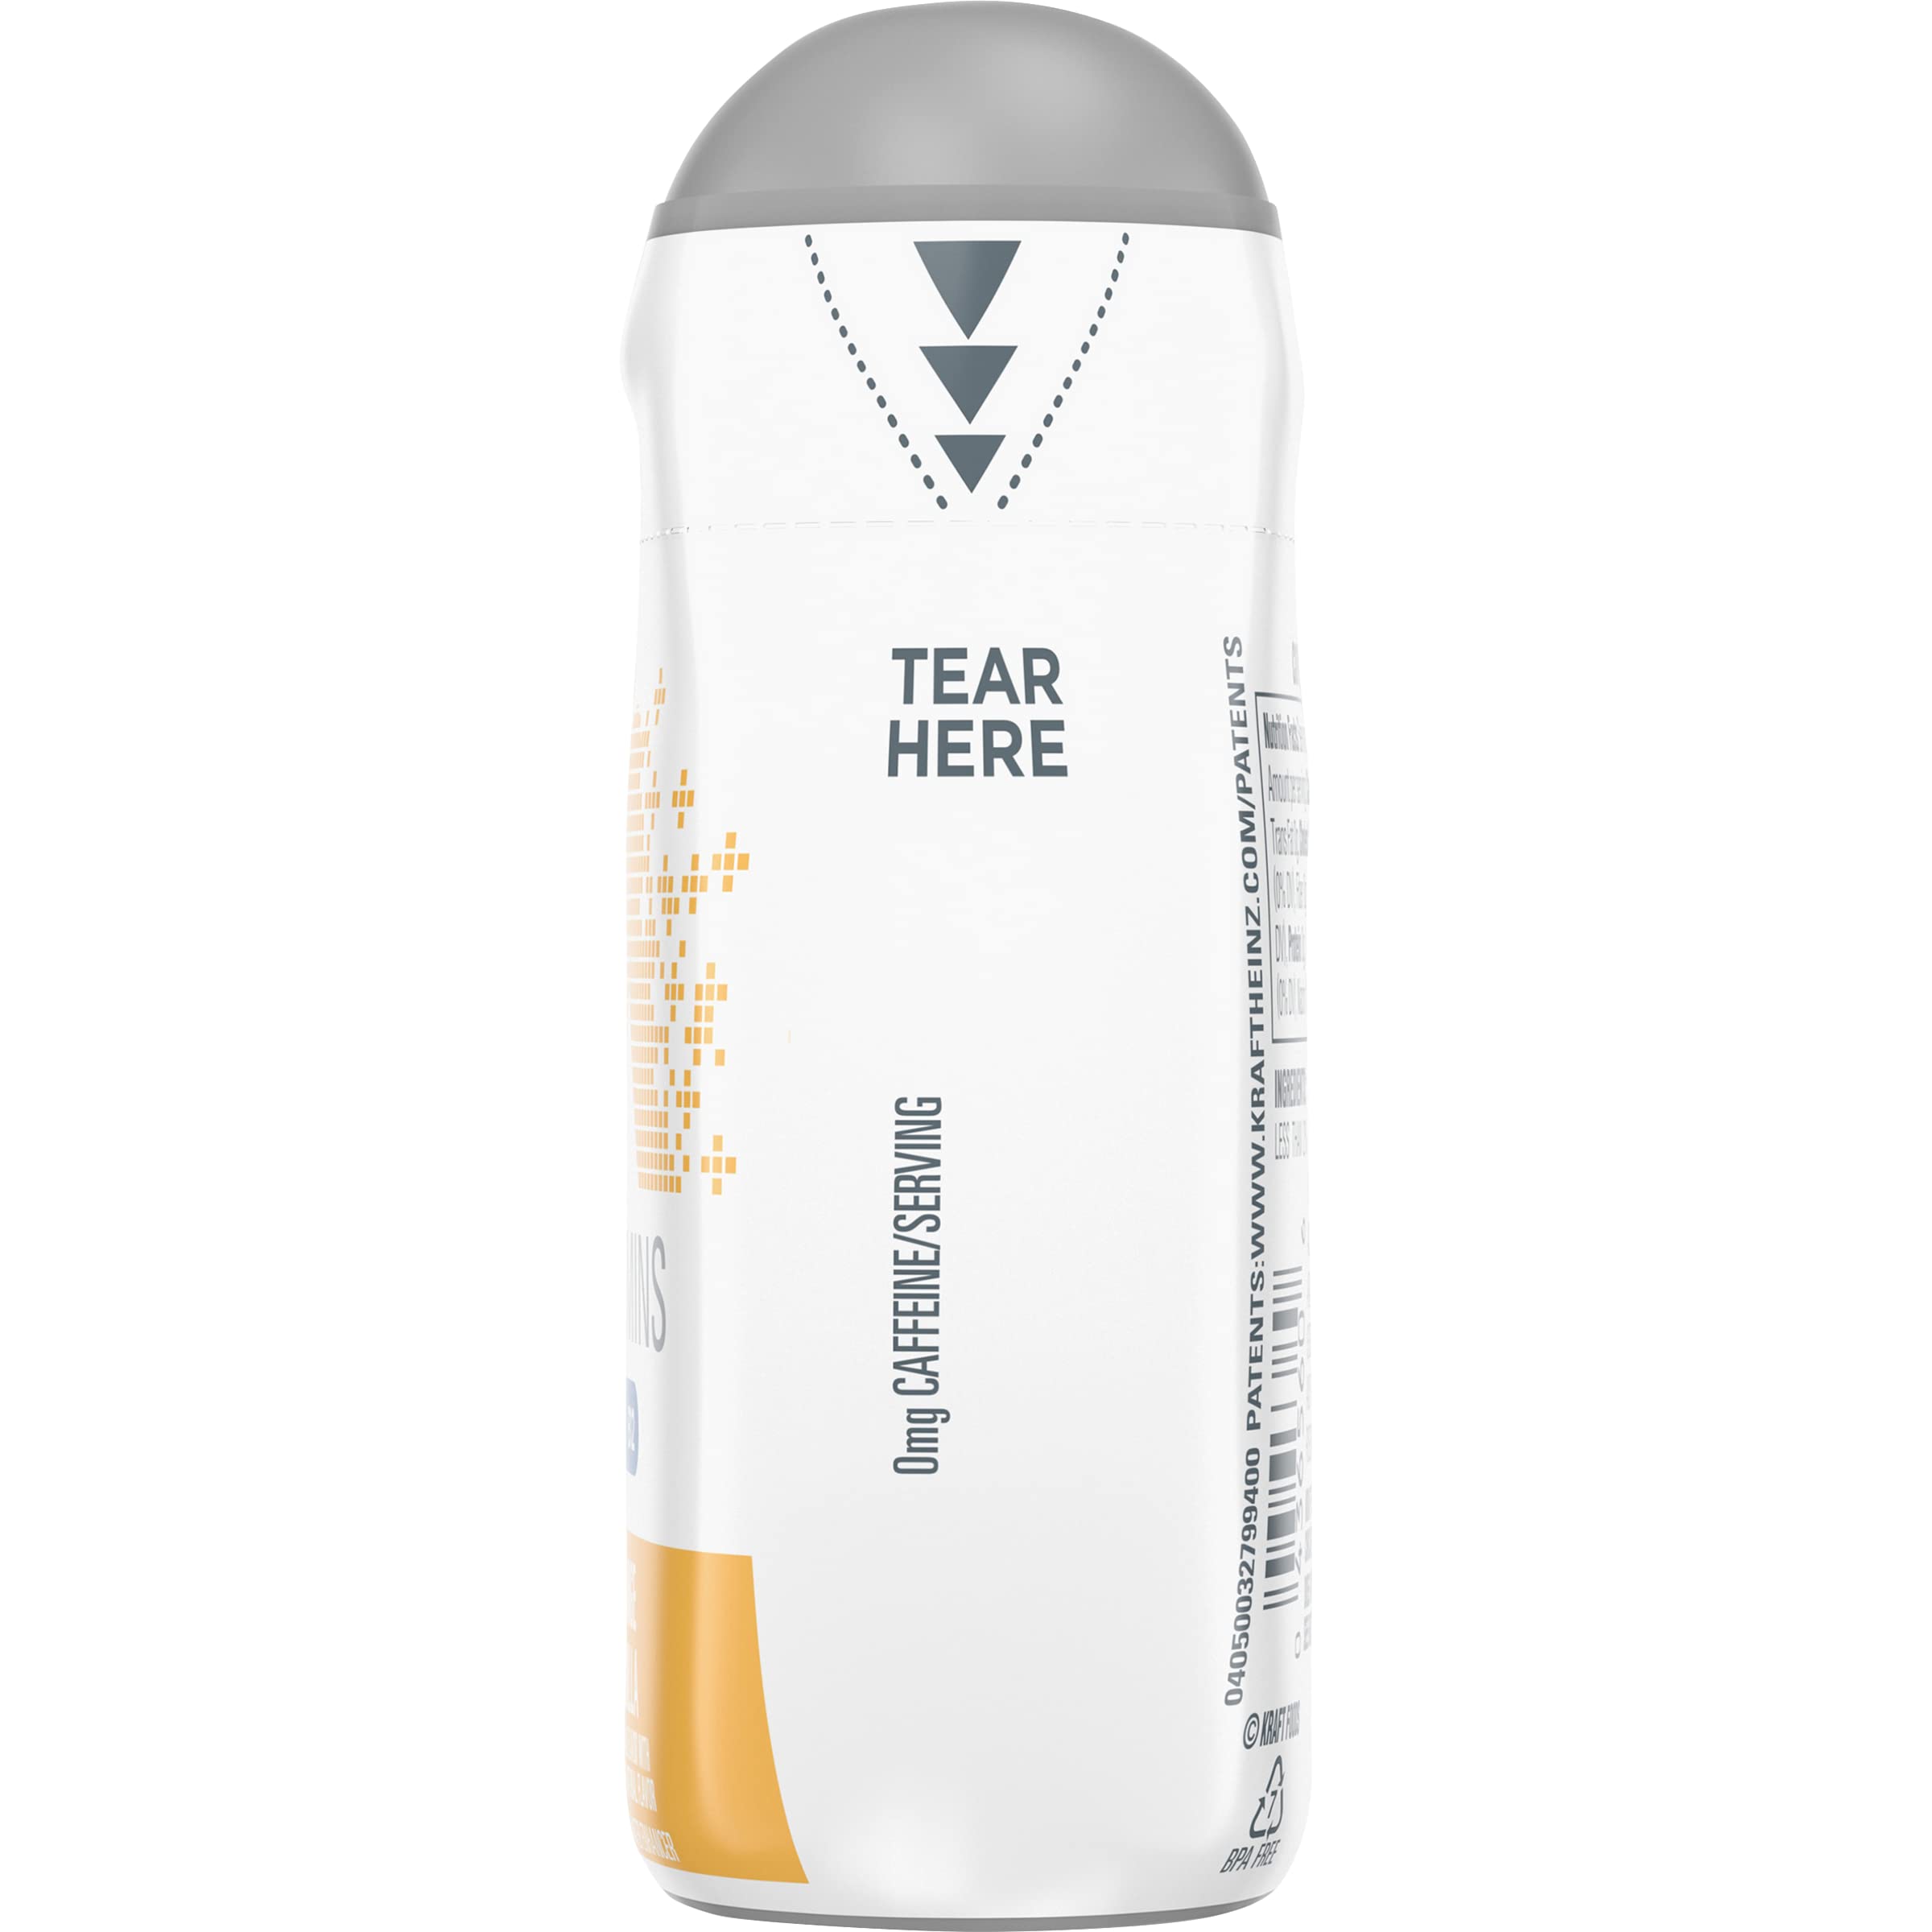 Mio Vitamins Liquid Water Enhancer, Orange Vanilla, 1.62 FL OZ. (Pack of 4)